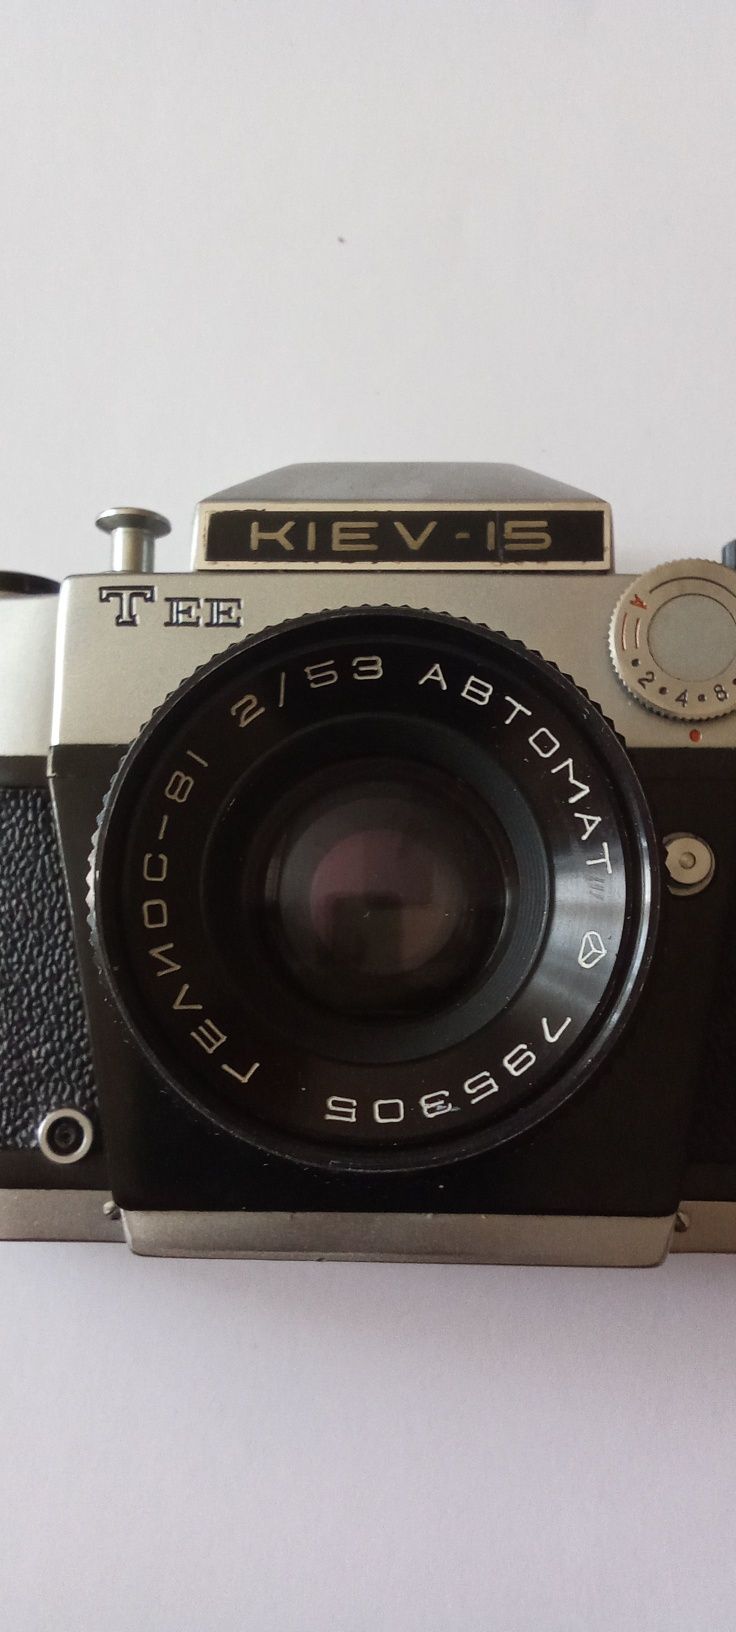 Продам плёночный фотоаппарат Киев -15